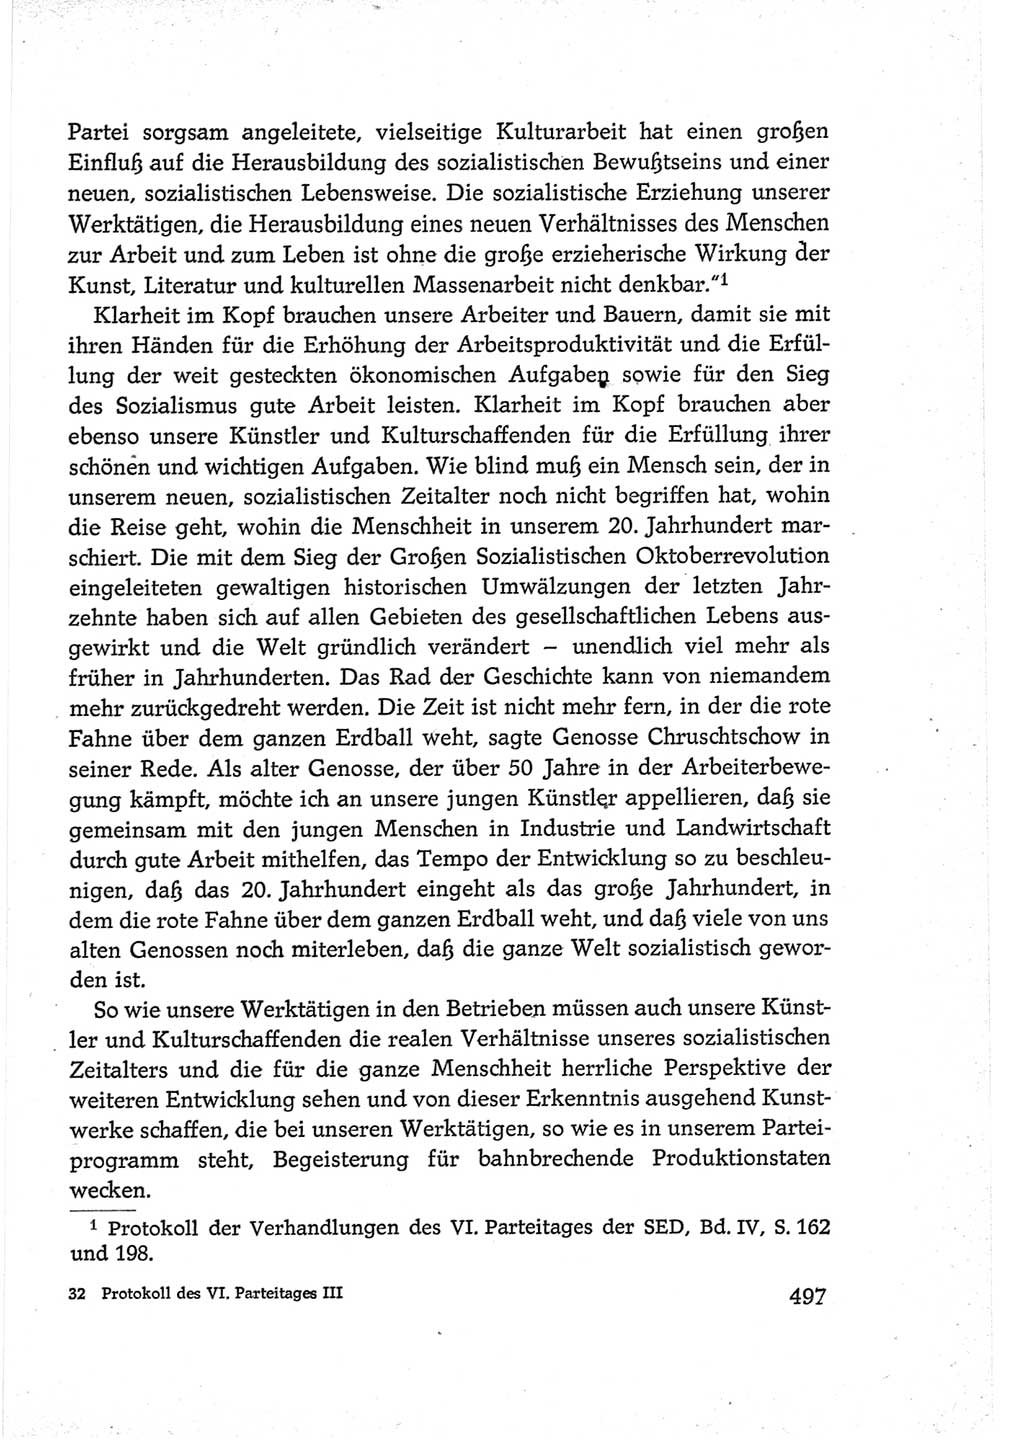 Protokoll der Verhandlungen des Ⅵ. Parteitages der Sozialistischen Einheitspartei Deutschlands (SED) [Deutsche Demokratische Republik (DDR)] 1963, Band Ⅲ, Seite 497 (Prot. Verh. Ⅵ. PT SED DDR 1963, Bd. Ⅲ, S. 497)